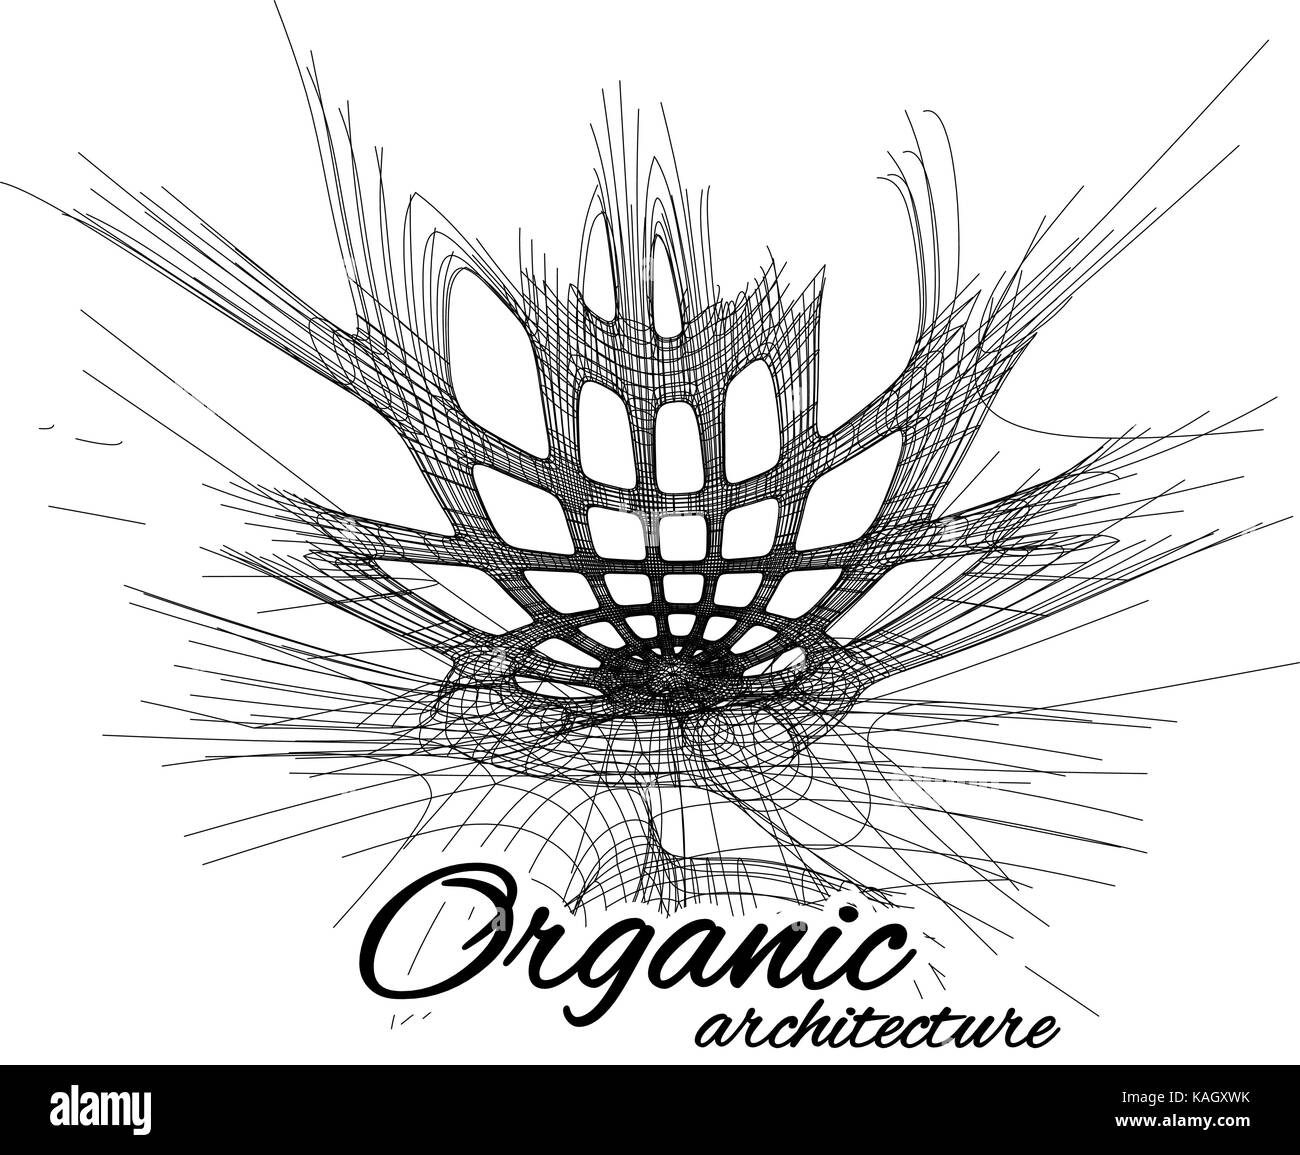 Architettura organica. Il concetto di unità con la natura comprese le linee morbide e le transizioni. Illustrazione Vettoriale